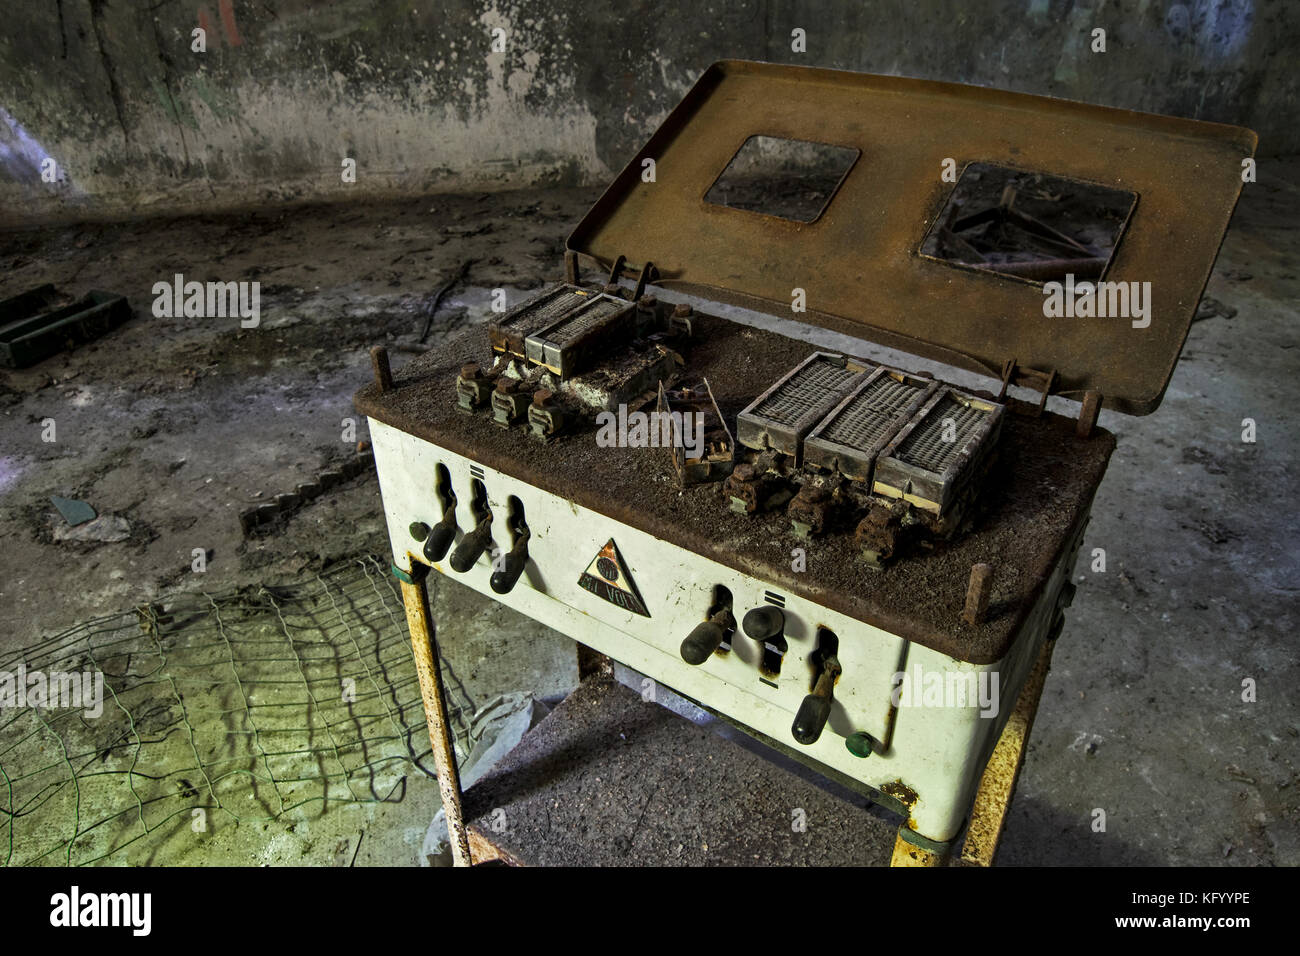 Ein Blick auf einen alten Elektro Schock Gerät, in einem verlassenen psychiatrischen Krankenhaus Stockfoto